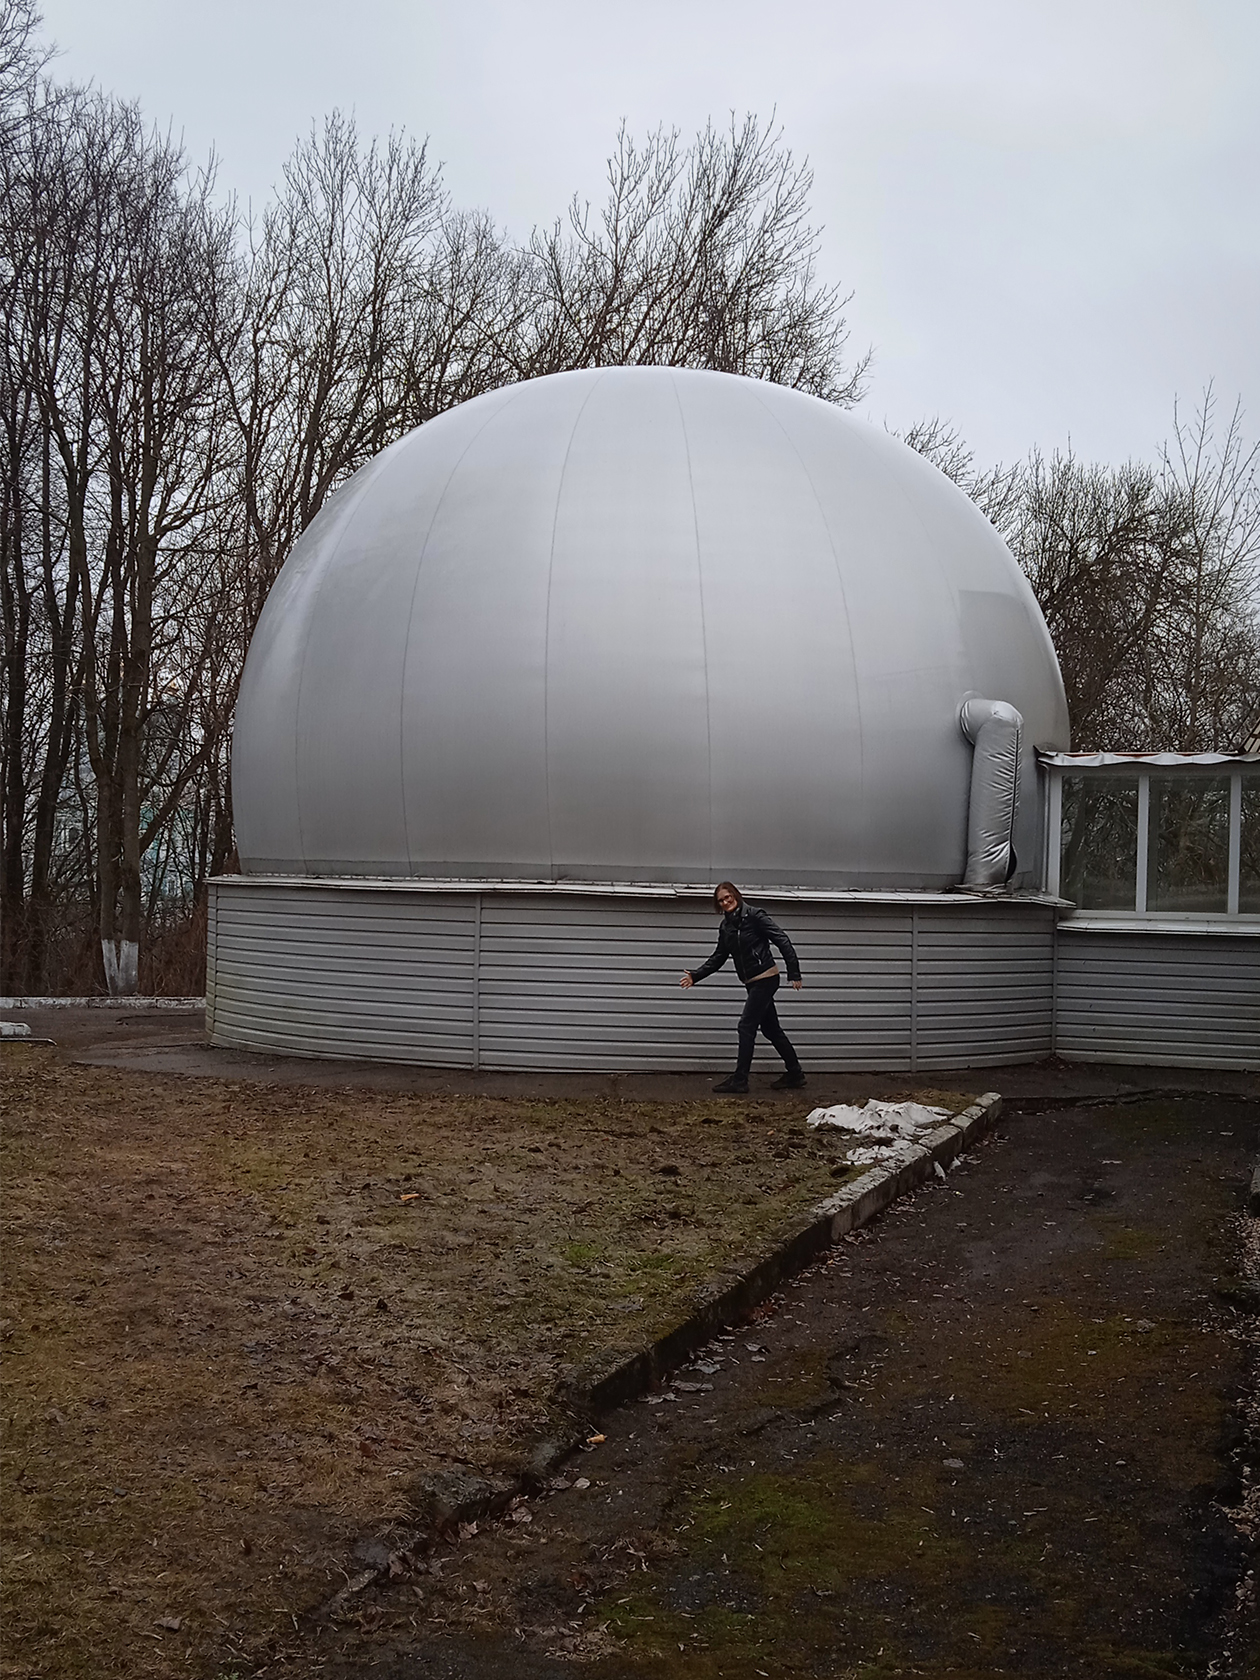 Изображаю робота Вертера у купола обсерватории